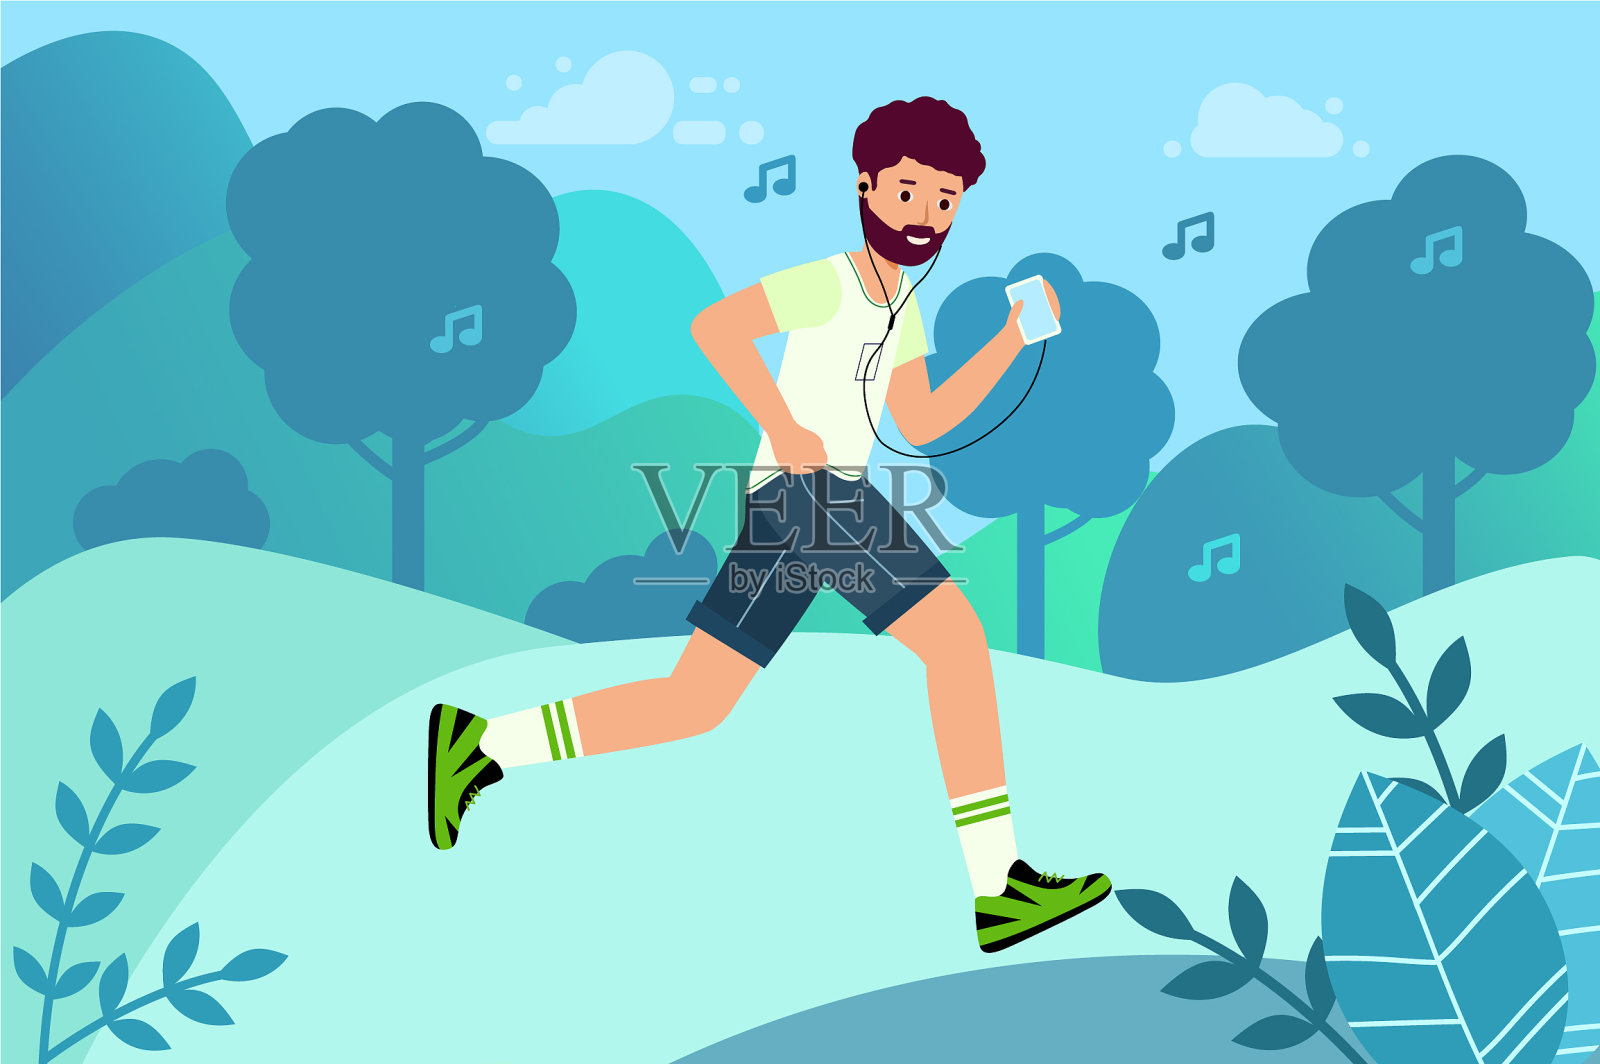 经典跑步专用音乐 - 歌单 - 网易云音乐